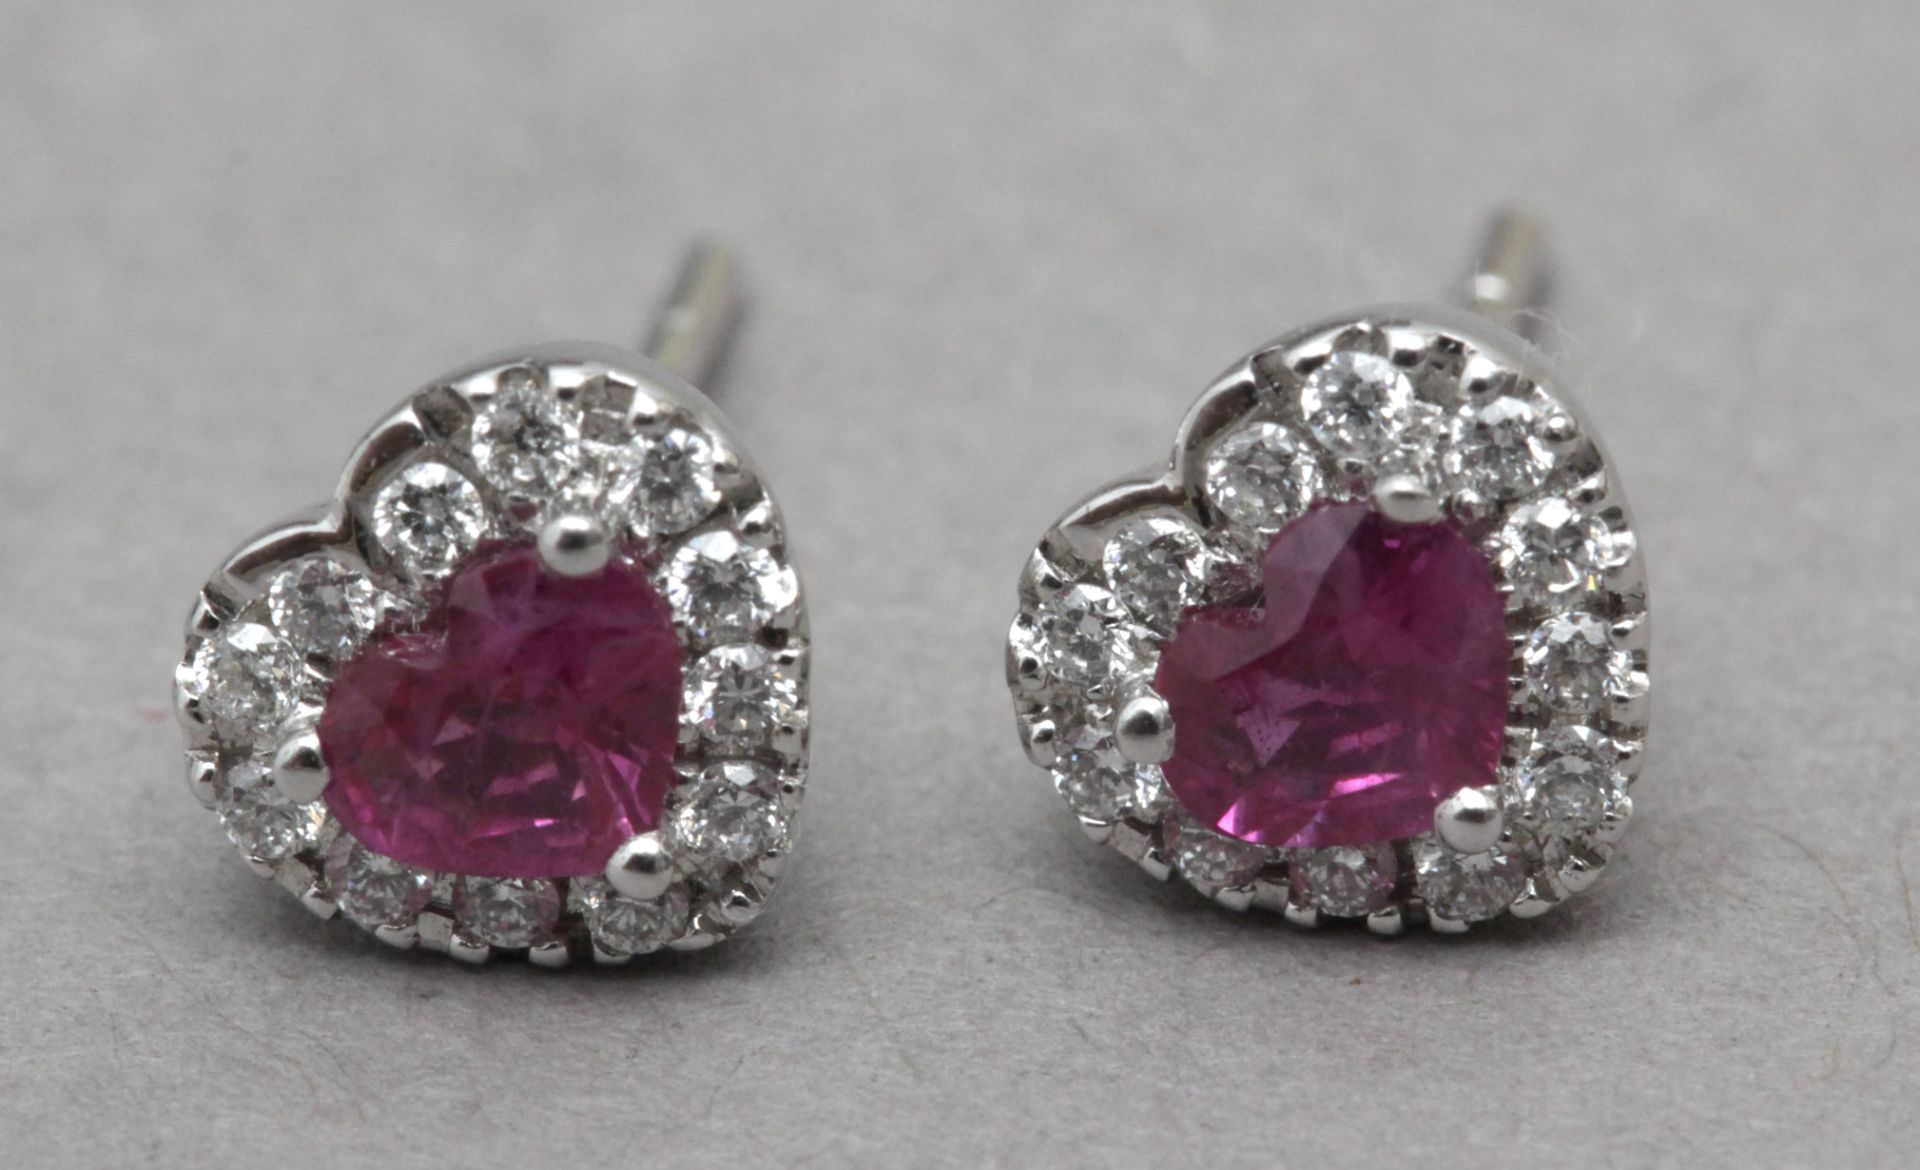 A diamond and rubies heart shaped stud earrings - Image 2 of 2